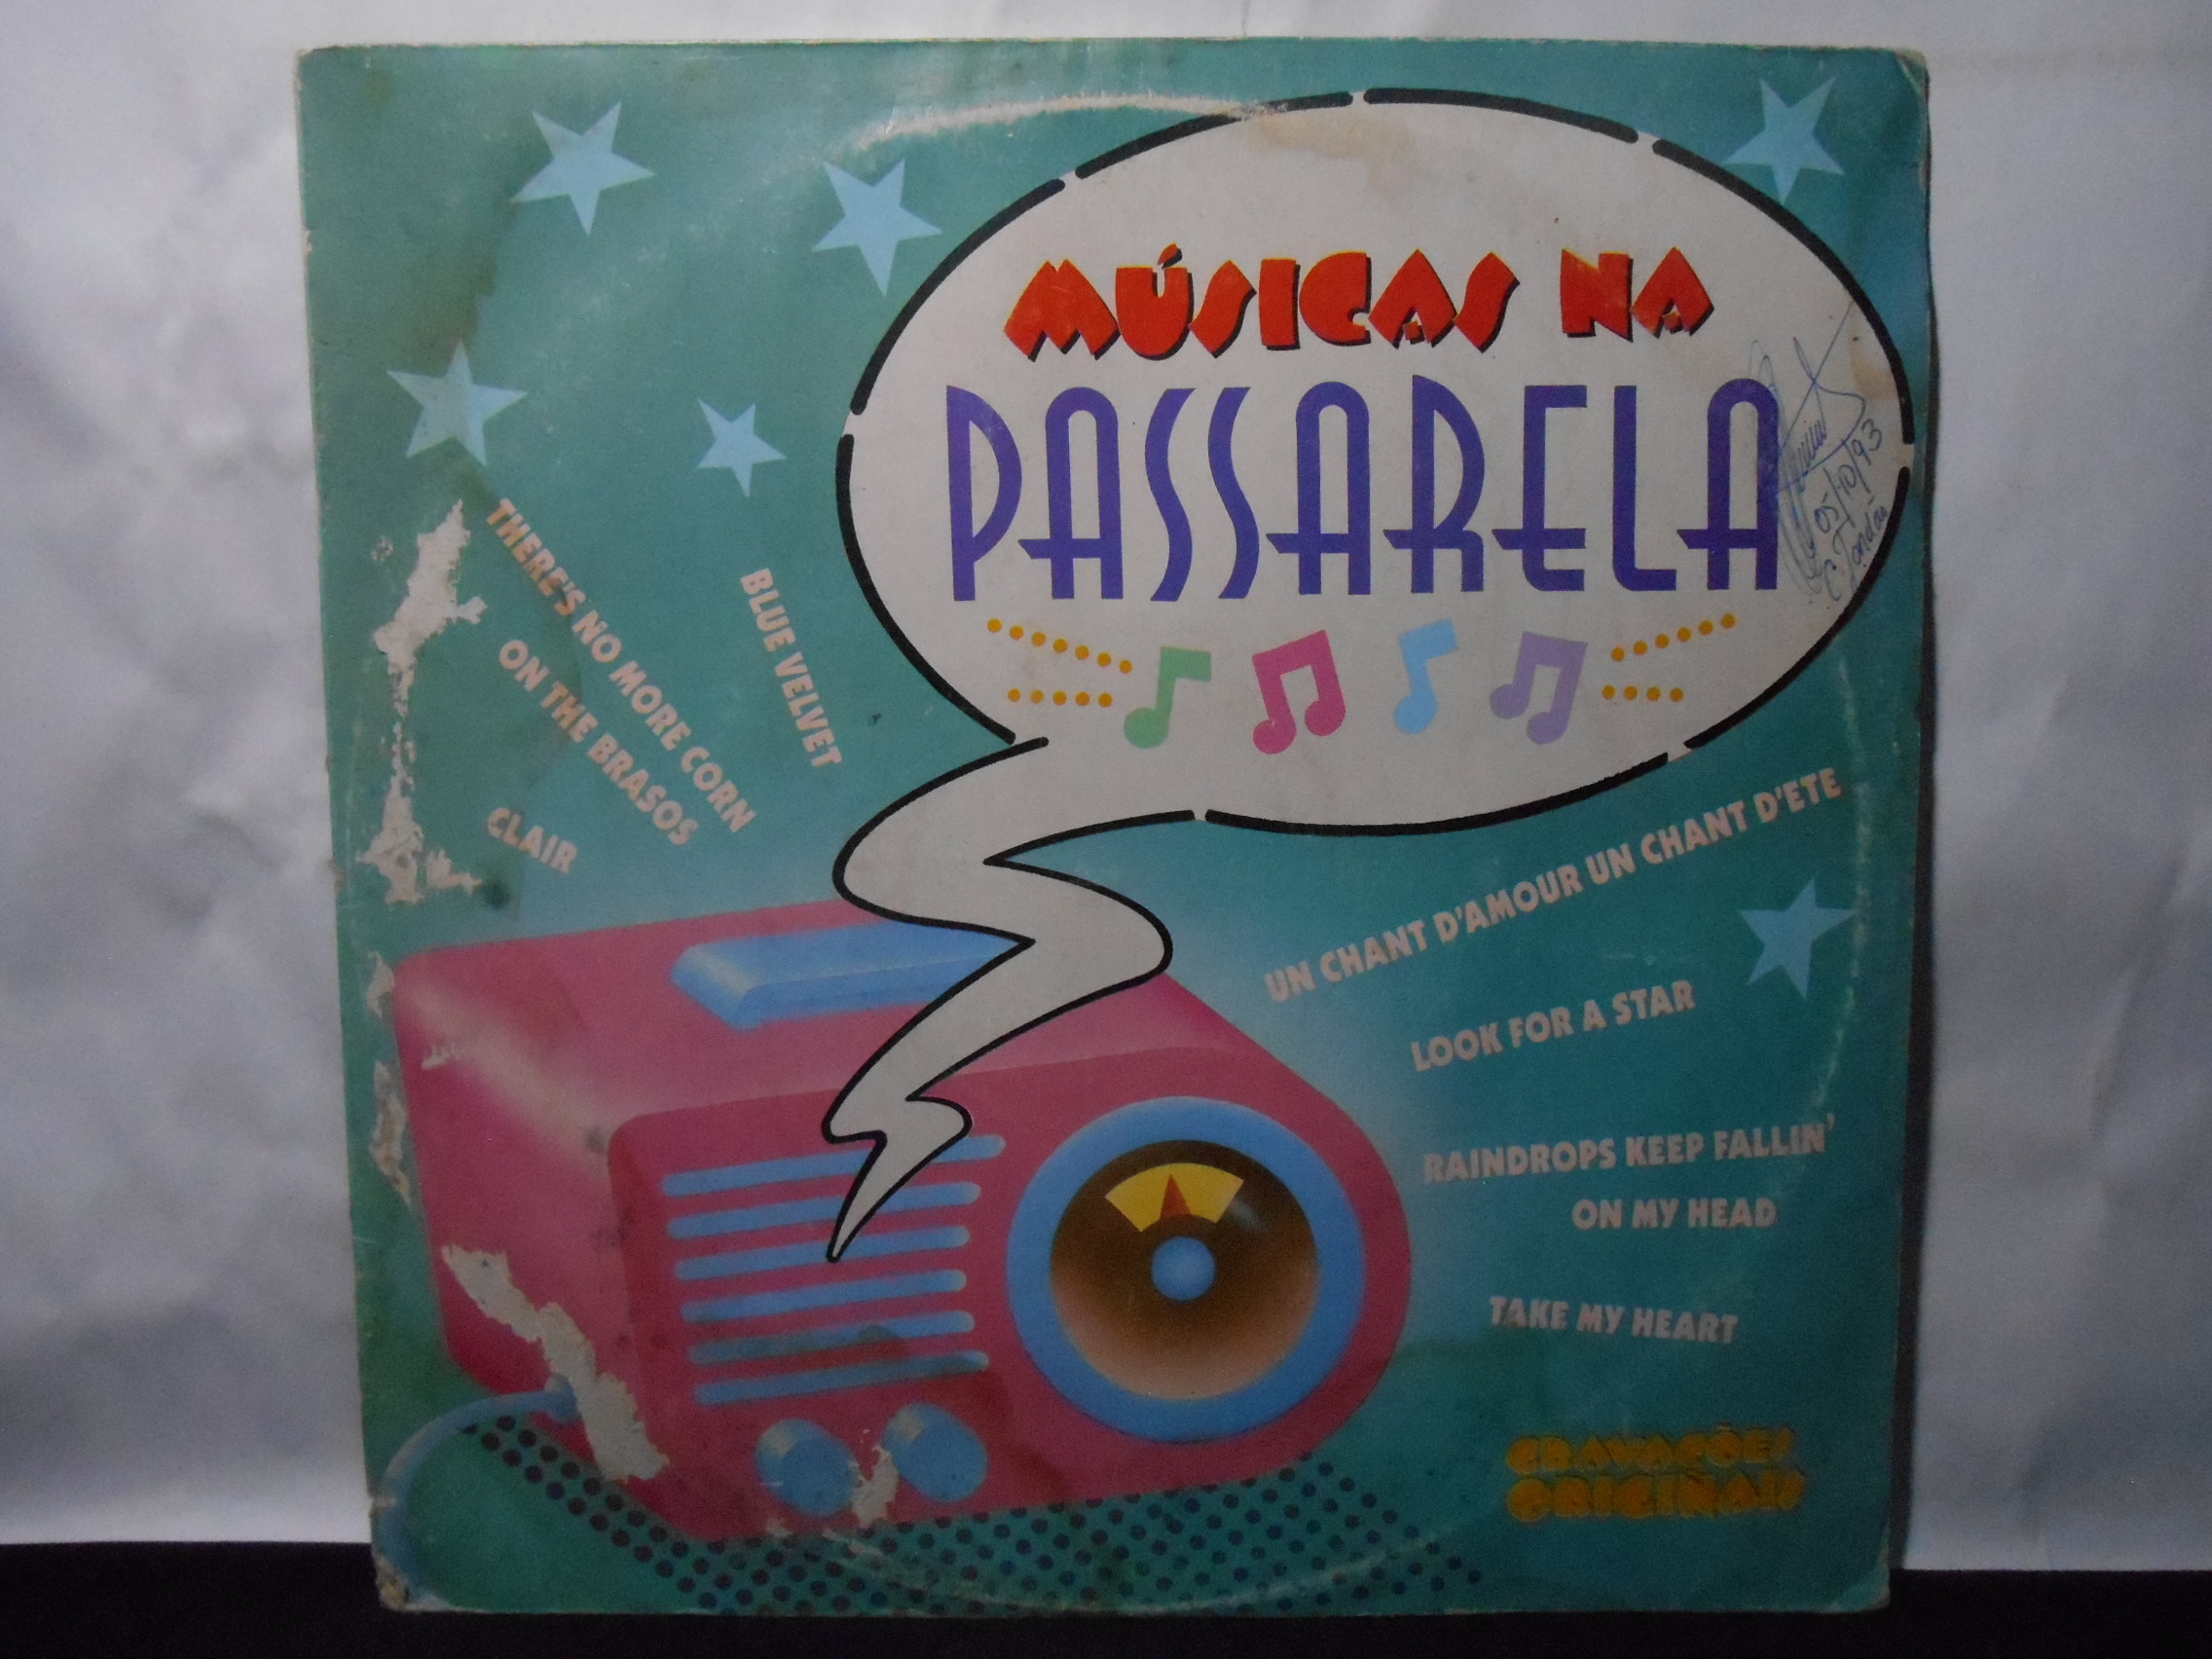 Vinil - Musicas Na Passarela - 1992